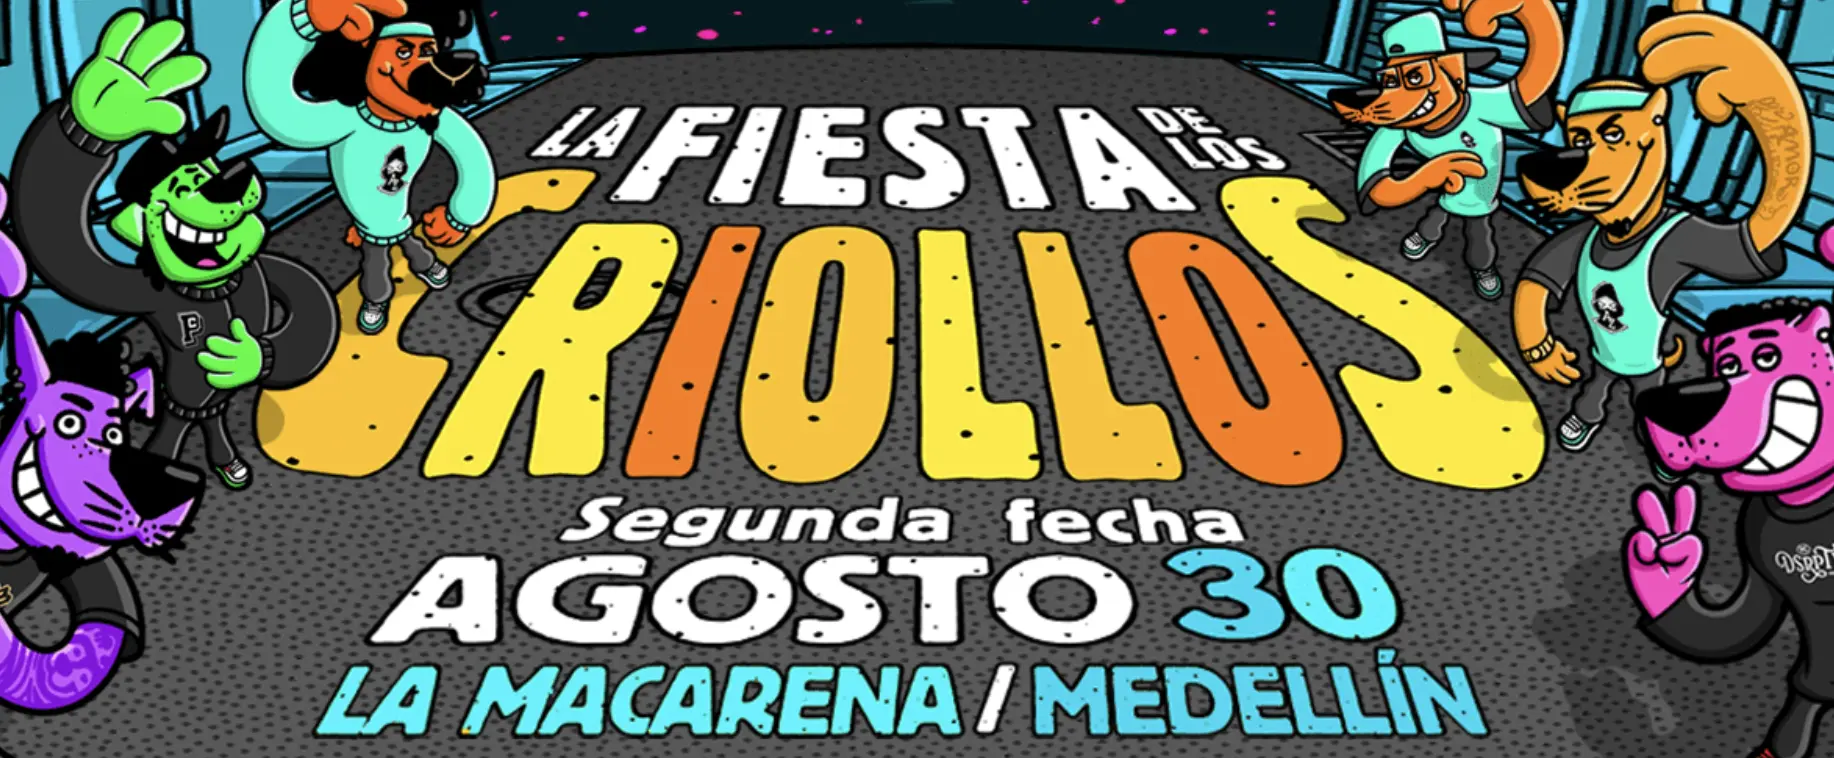 Comprar entradas para La fiesta de los criollos - Agosto 30 en Medellín